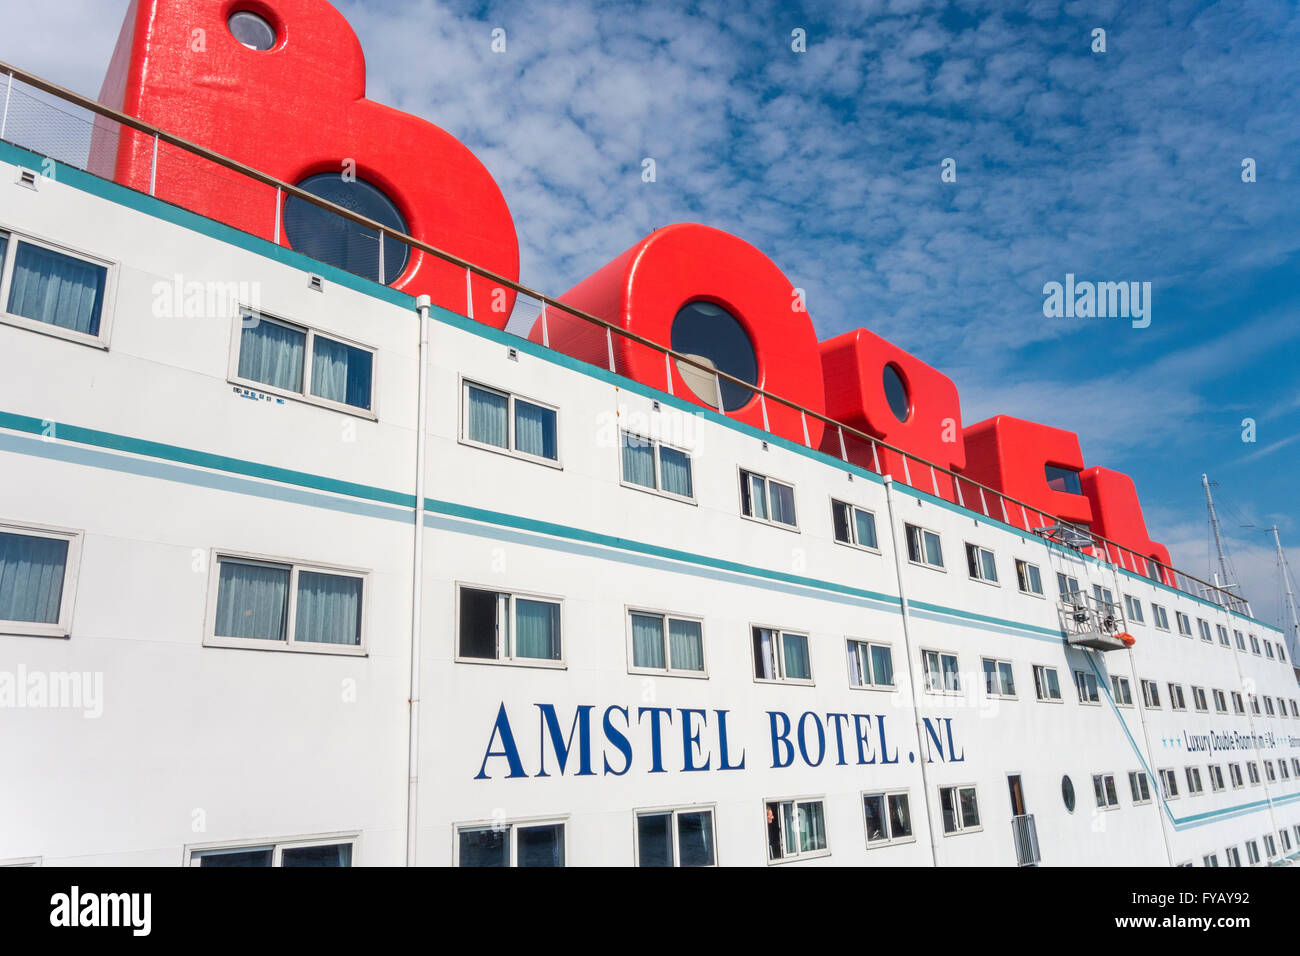 Amstel Botel Amsterdam hôtel flottant dans le port d'Amsterdam IJ avec chambres à l'hôtel loft logo caractères Banque D'Images